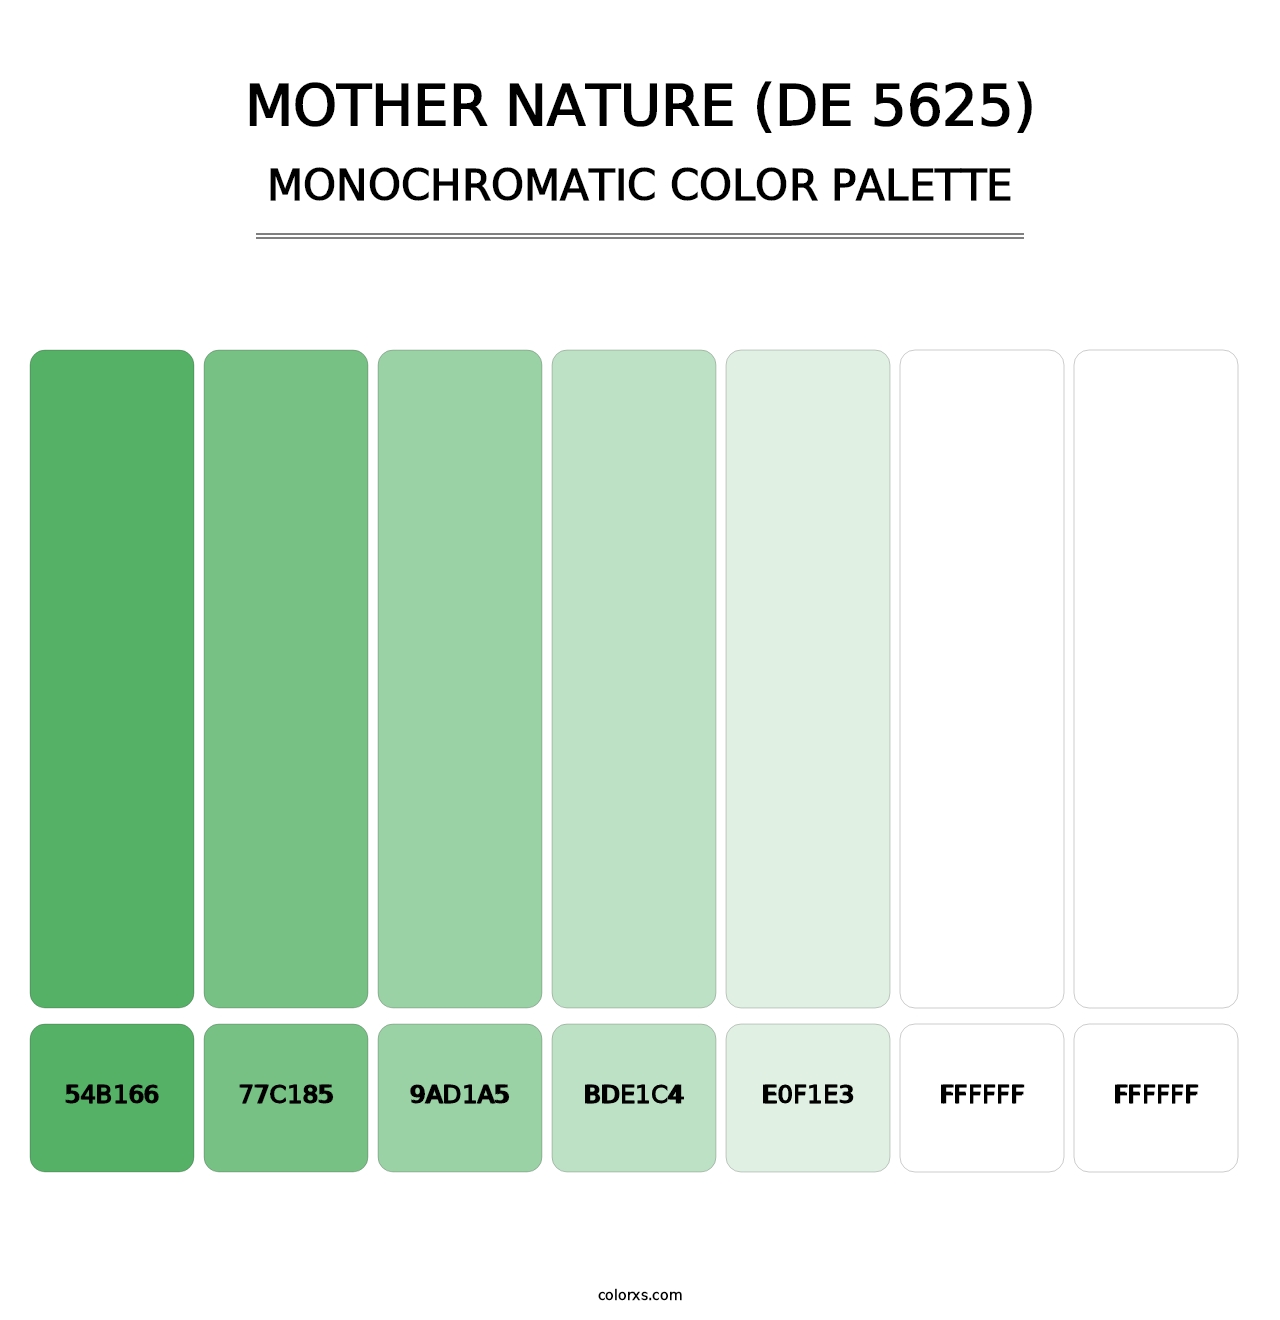 Mother Nature (DE 5625) - Monochromatic Color Palette